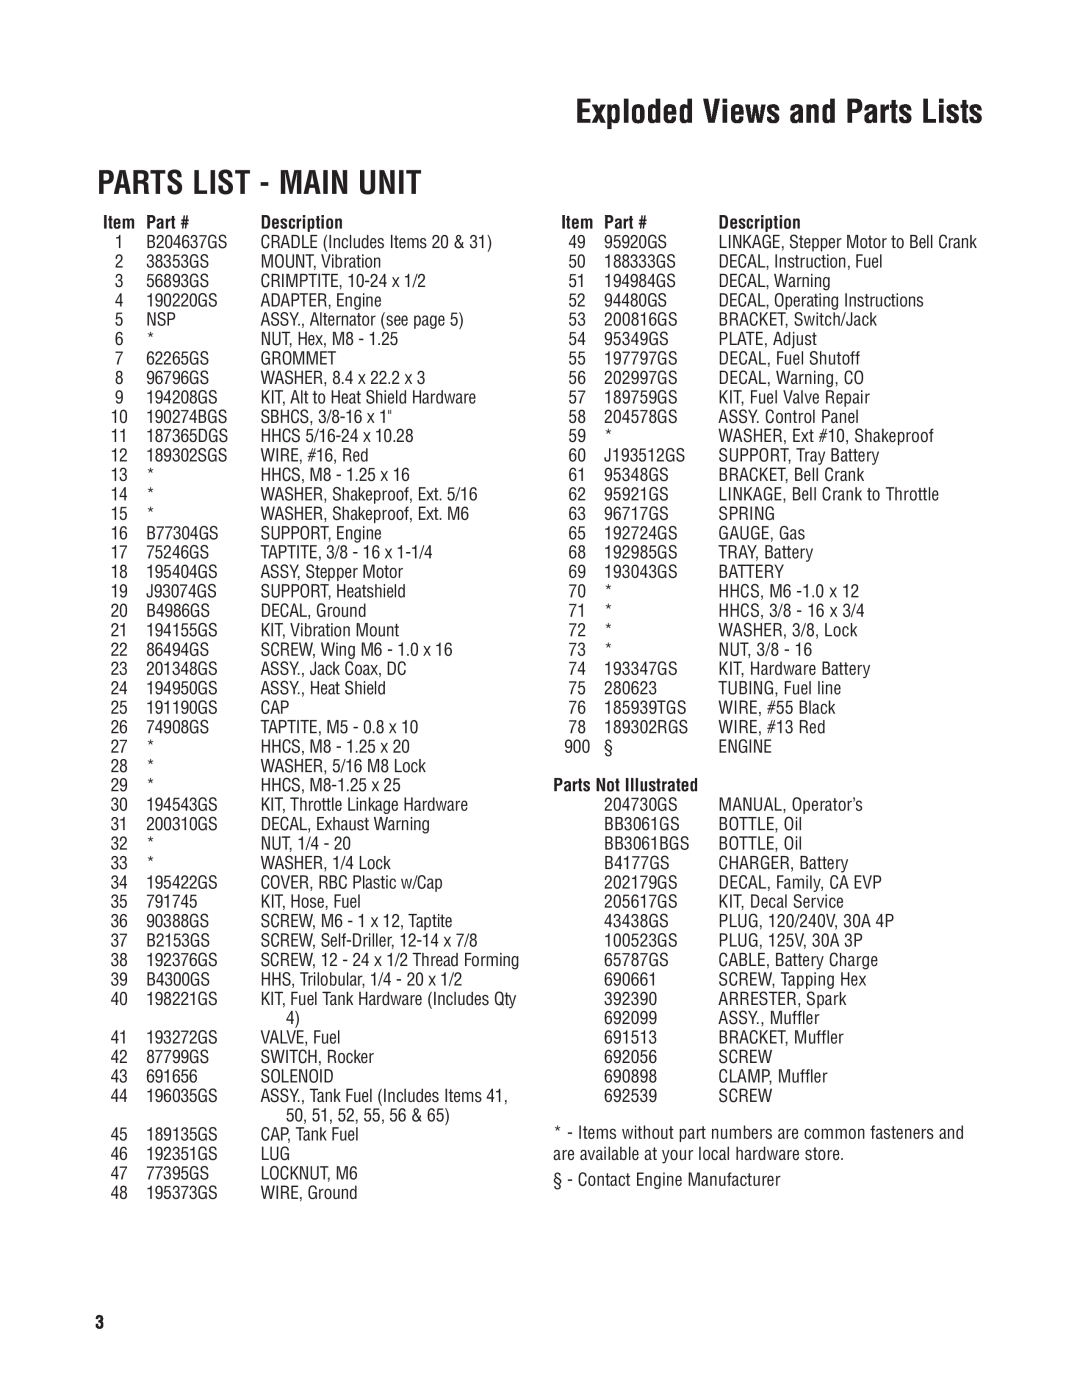 Briggs & Stratton PRO10000 030383, PRO 10000 manual Parts List - Main Unit, Item, Part #, Description, Parts Not Illustrated 